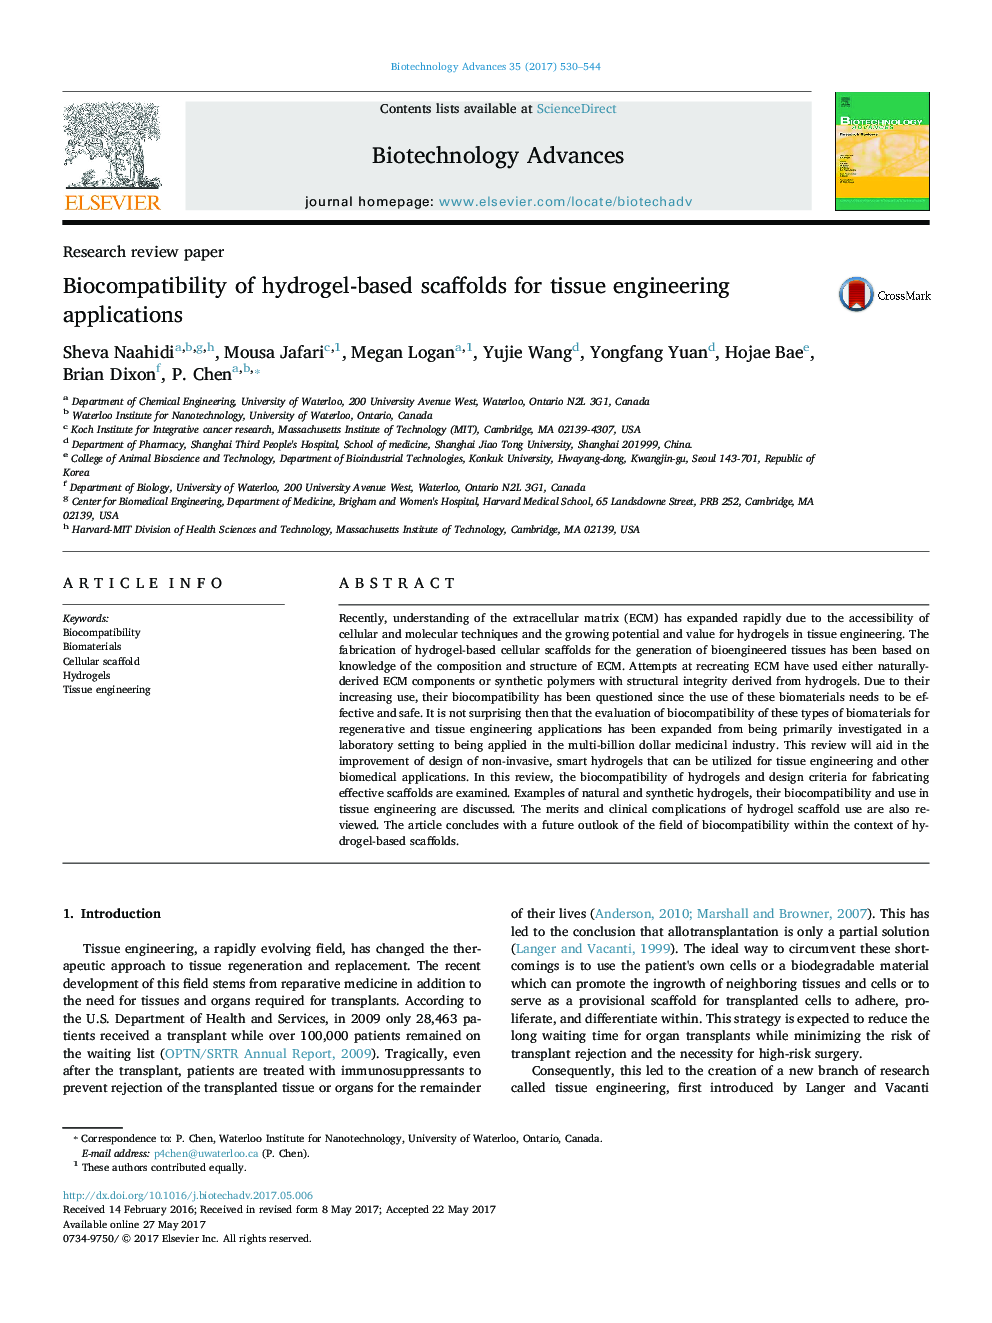 مقاله پژوهشی بررسی سازگاری داربست های مبتنی بر هیدروژل برای برنامه های کاربردی مهندسی بافت